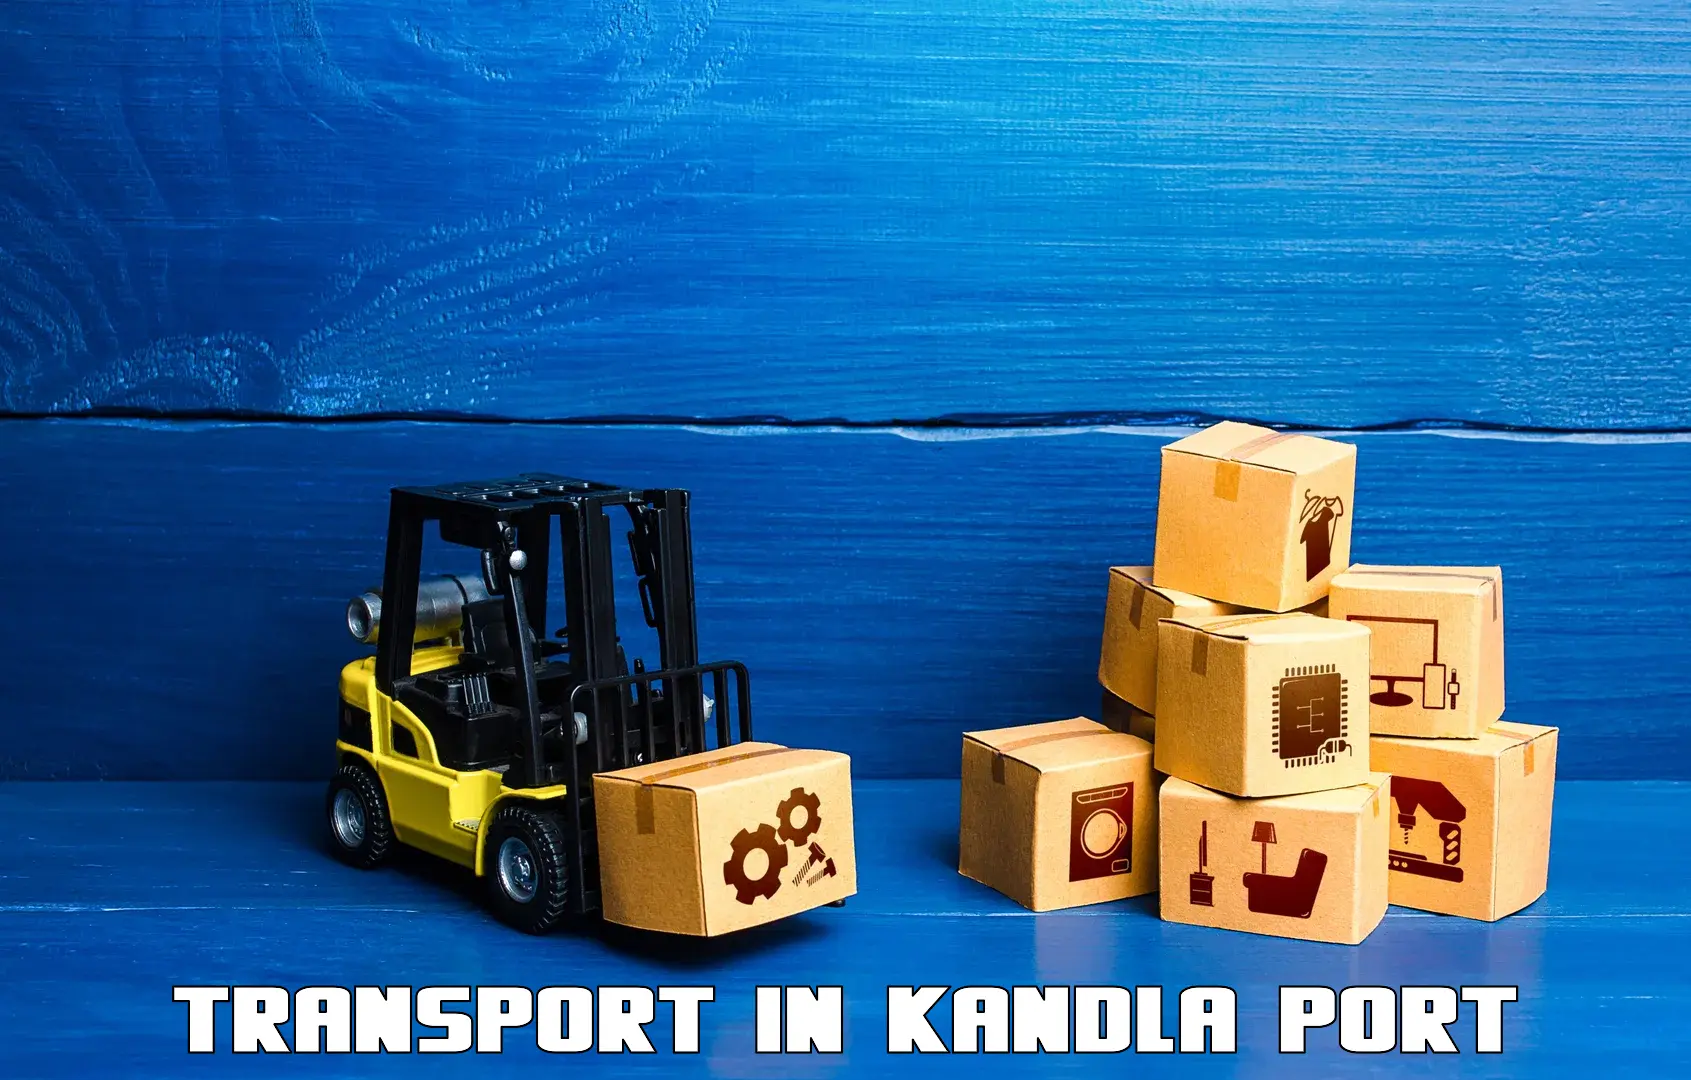 Interstate goods transport in Kandla Port